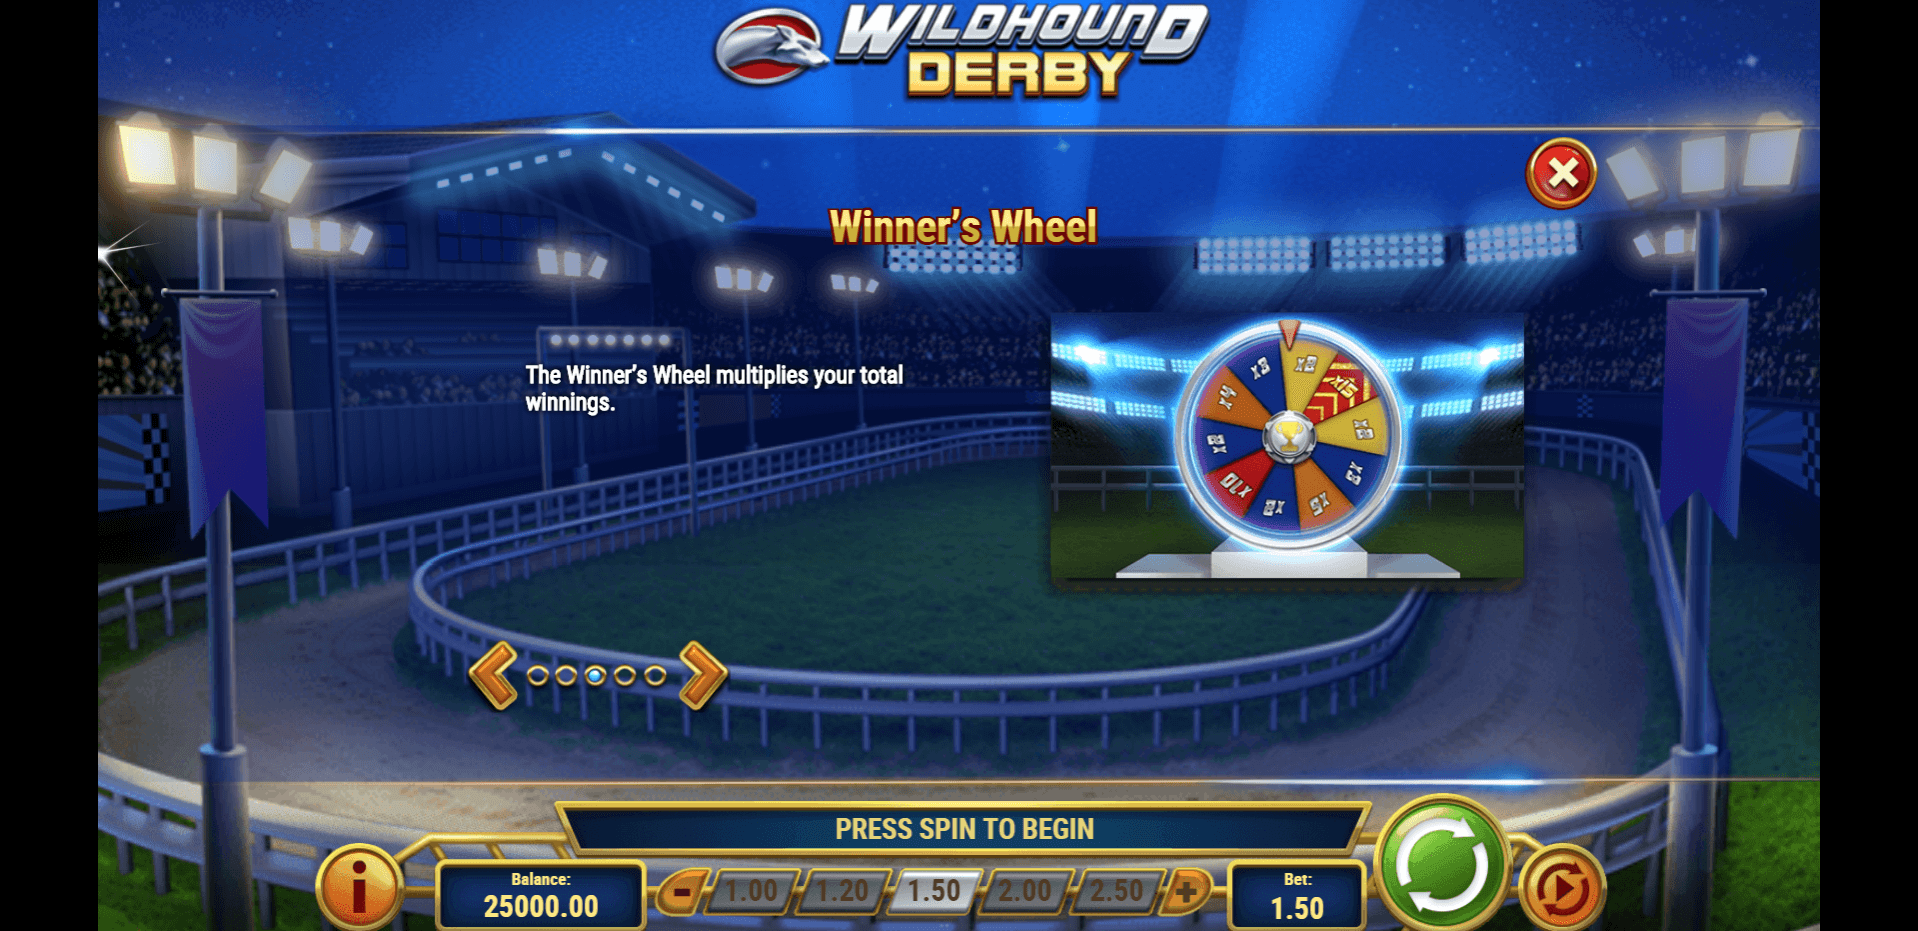 wildhound derby slot machine detail image 2